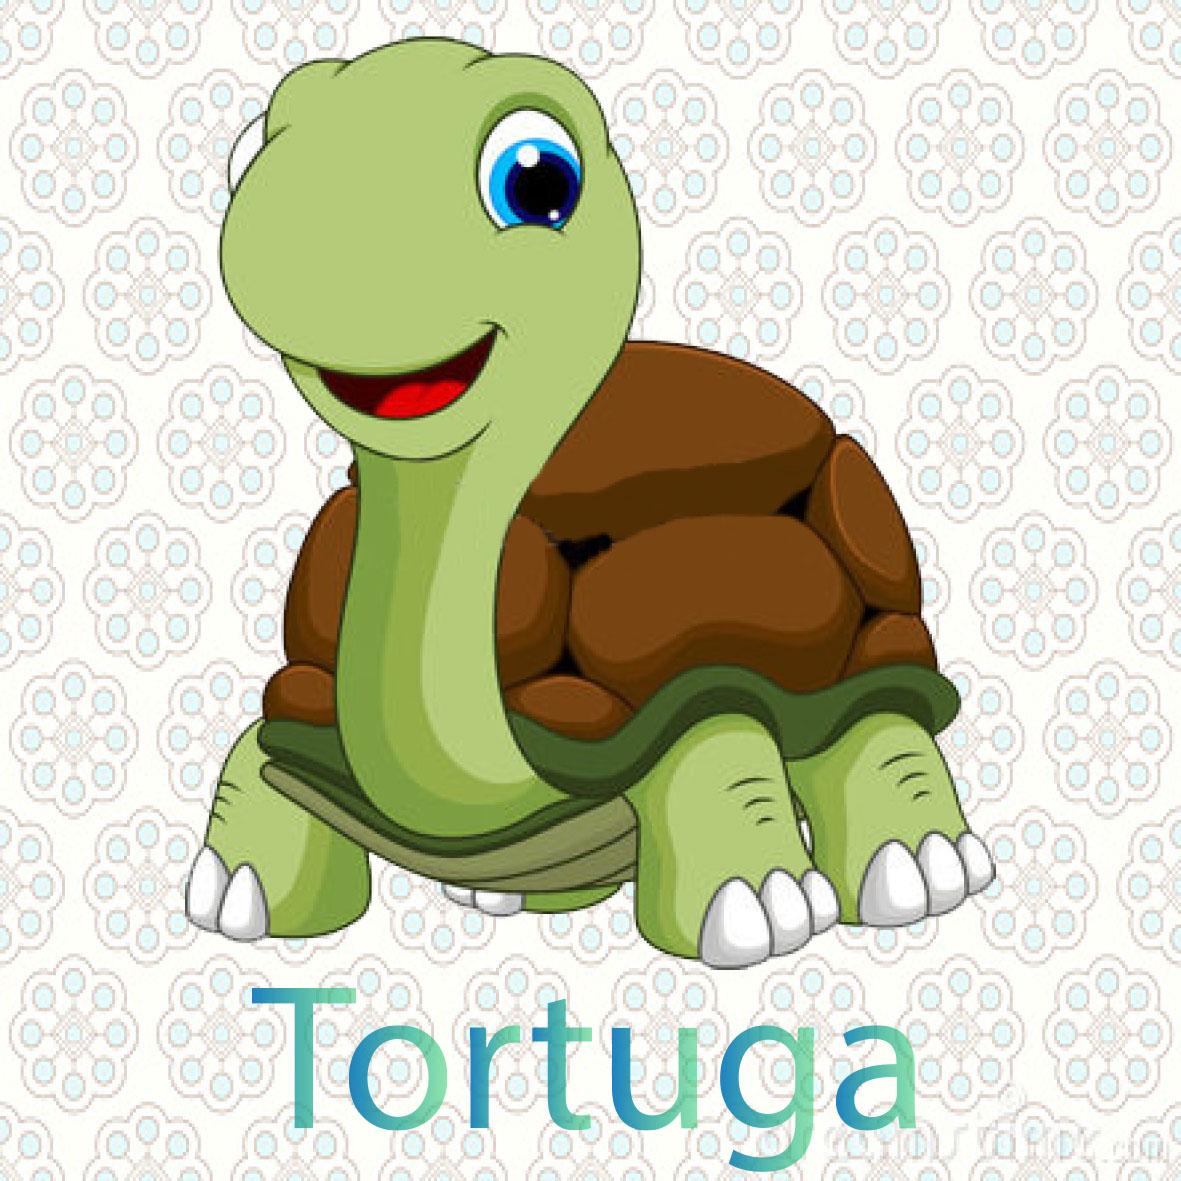  imagen de una tortuga tiene cuatro patas y un caparazón muy duro, viven en el mar o tambien la en tierra se alimentan de platas y frutas